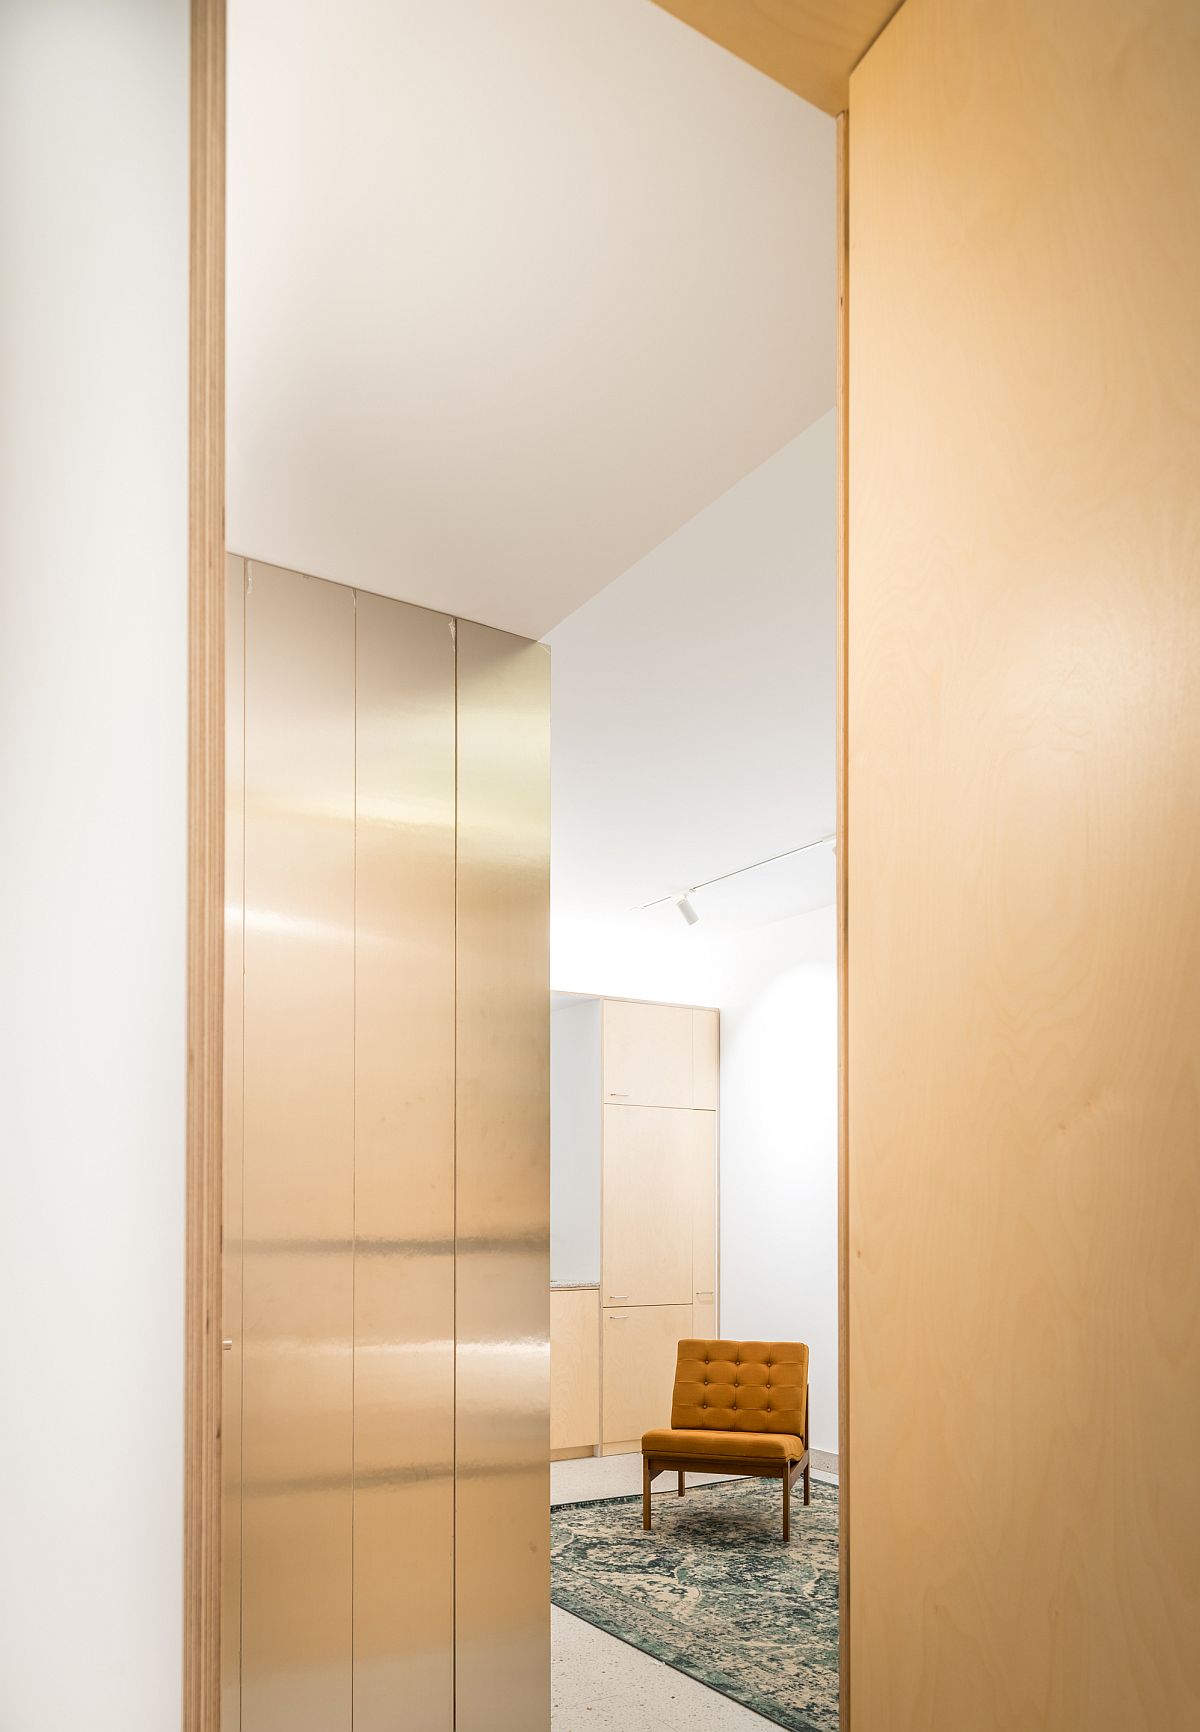 Hình ảnh một góc căn hộ 45m2 nỏi bật với ghế ngồi thư giãn màu vàng chanh